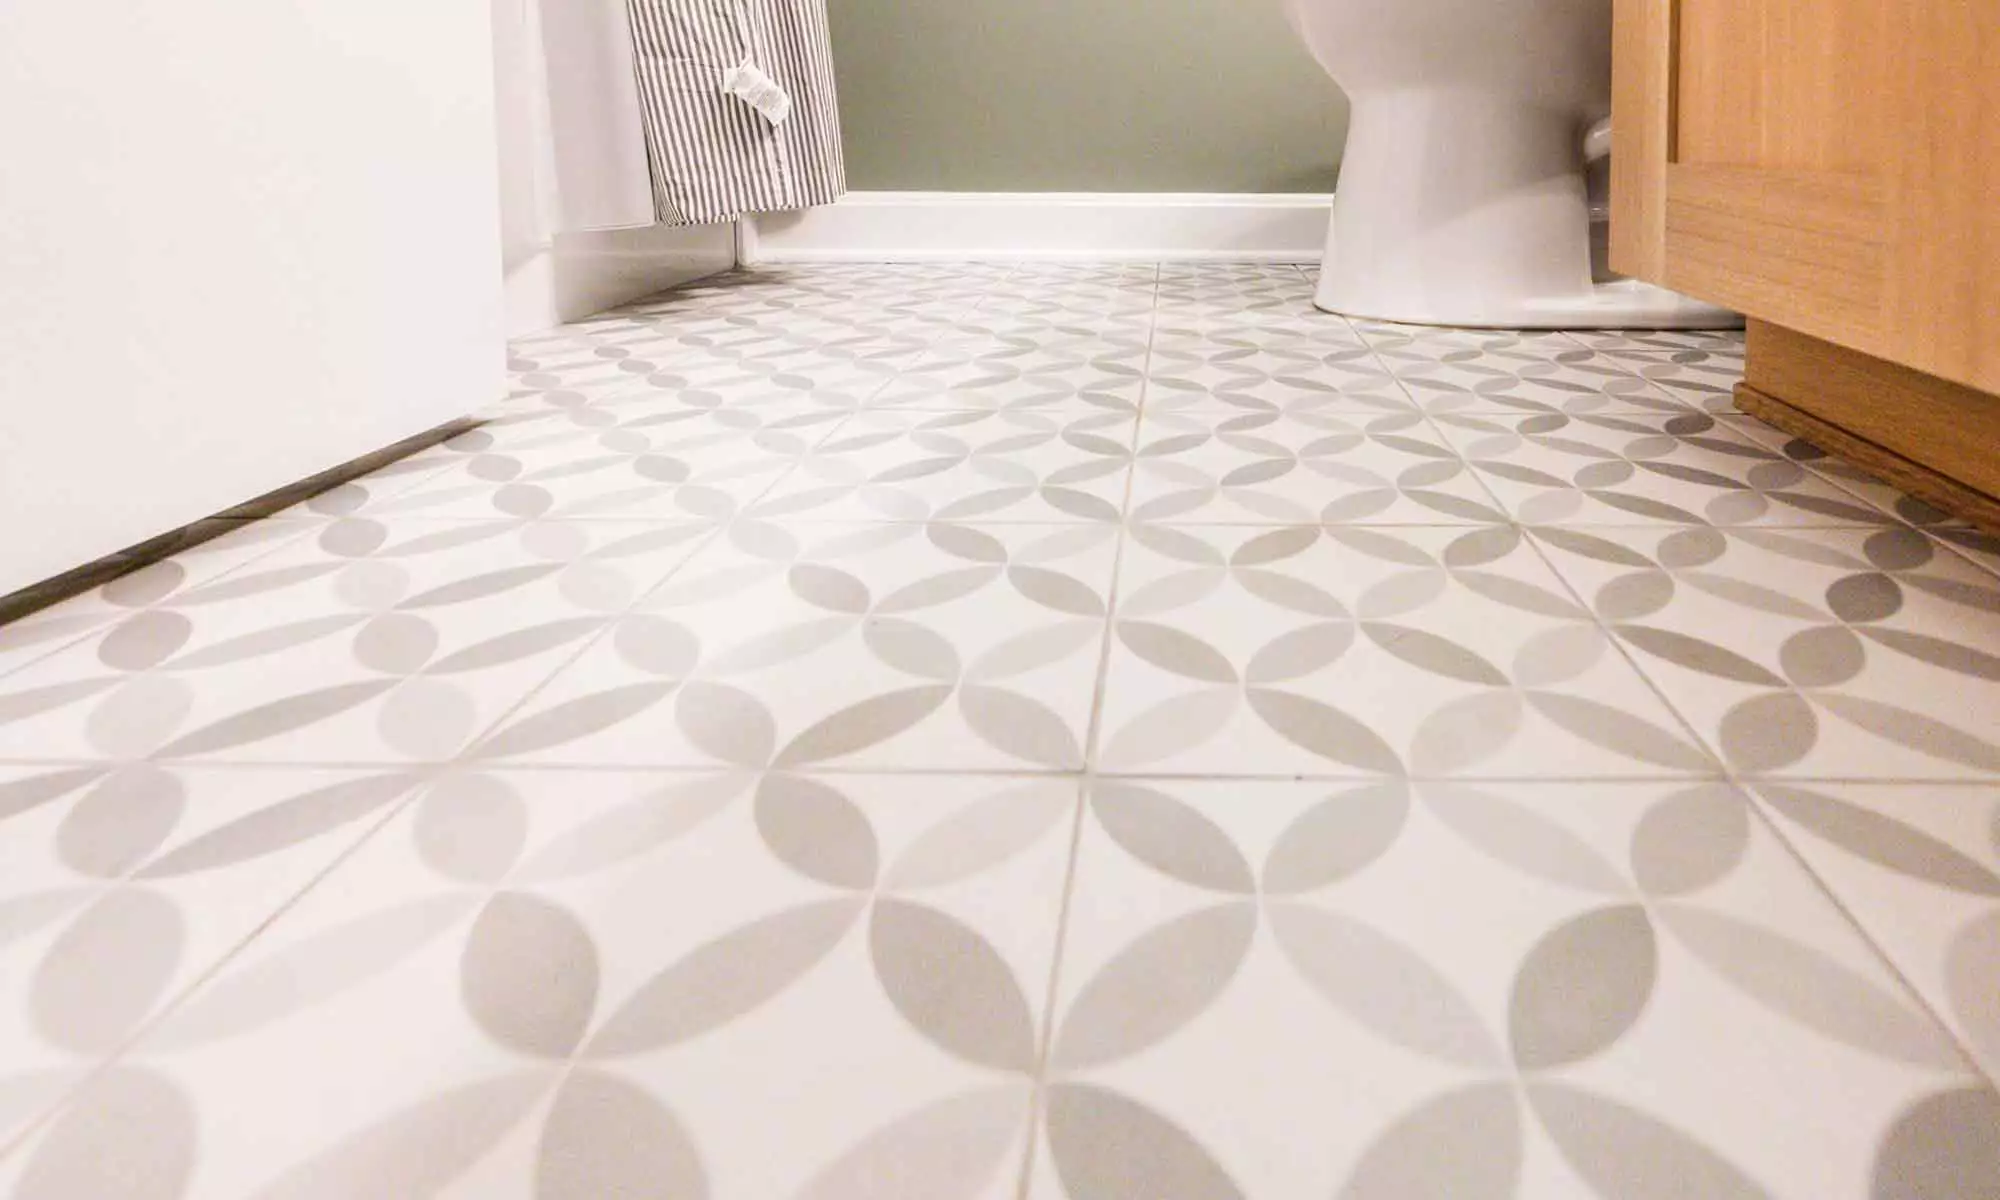 grey patterned tile with white oak vanity basement bathroom remodel